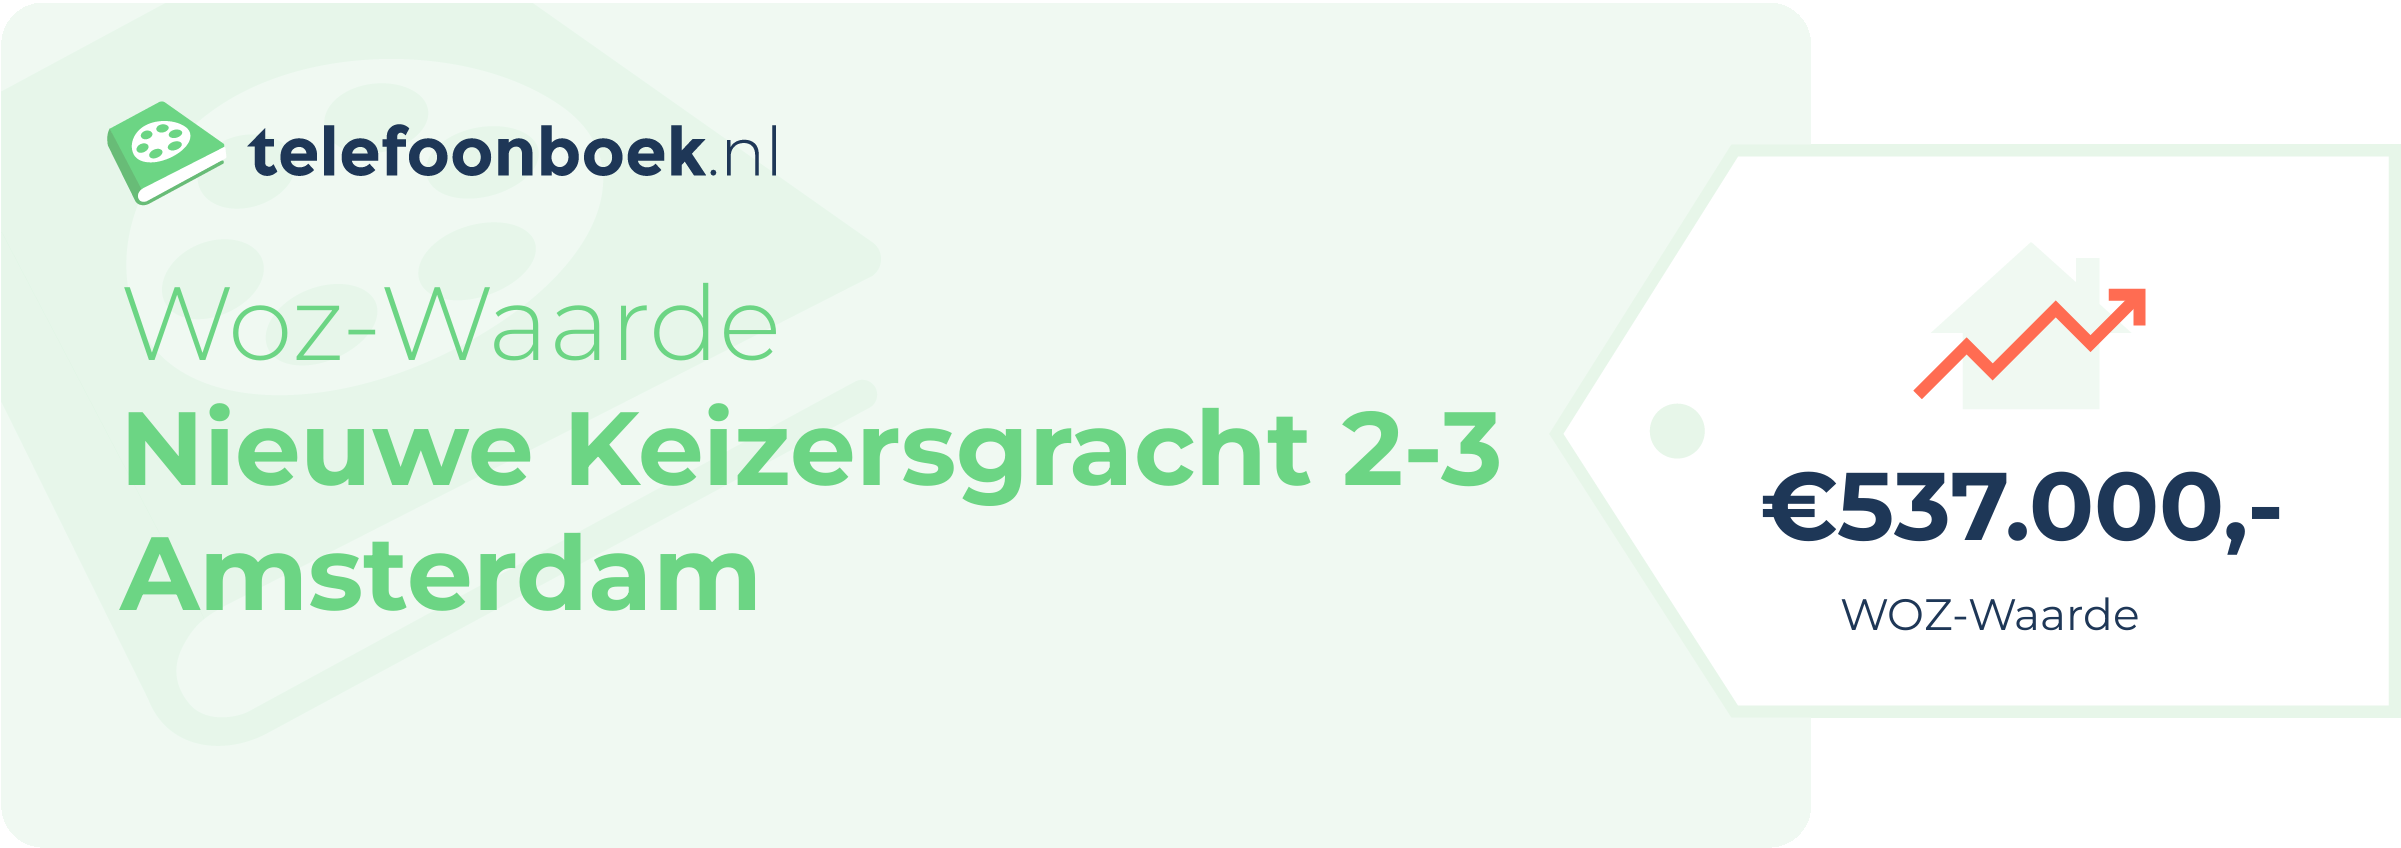 WOZ-waarde Nieuwe Keizersgracht 2-3 Amsterdam